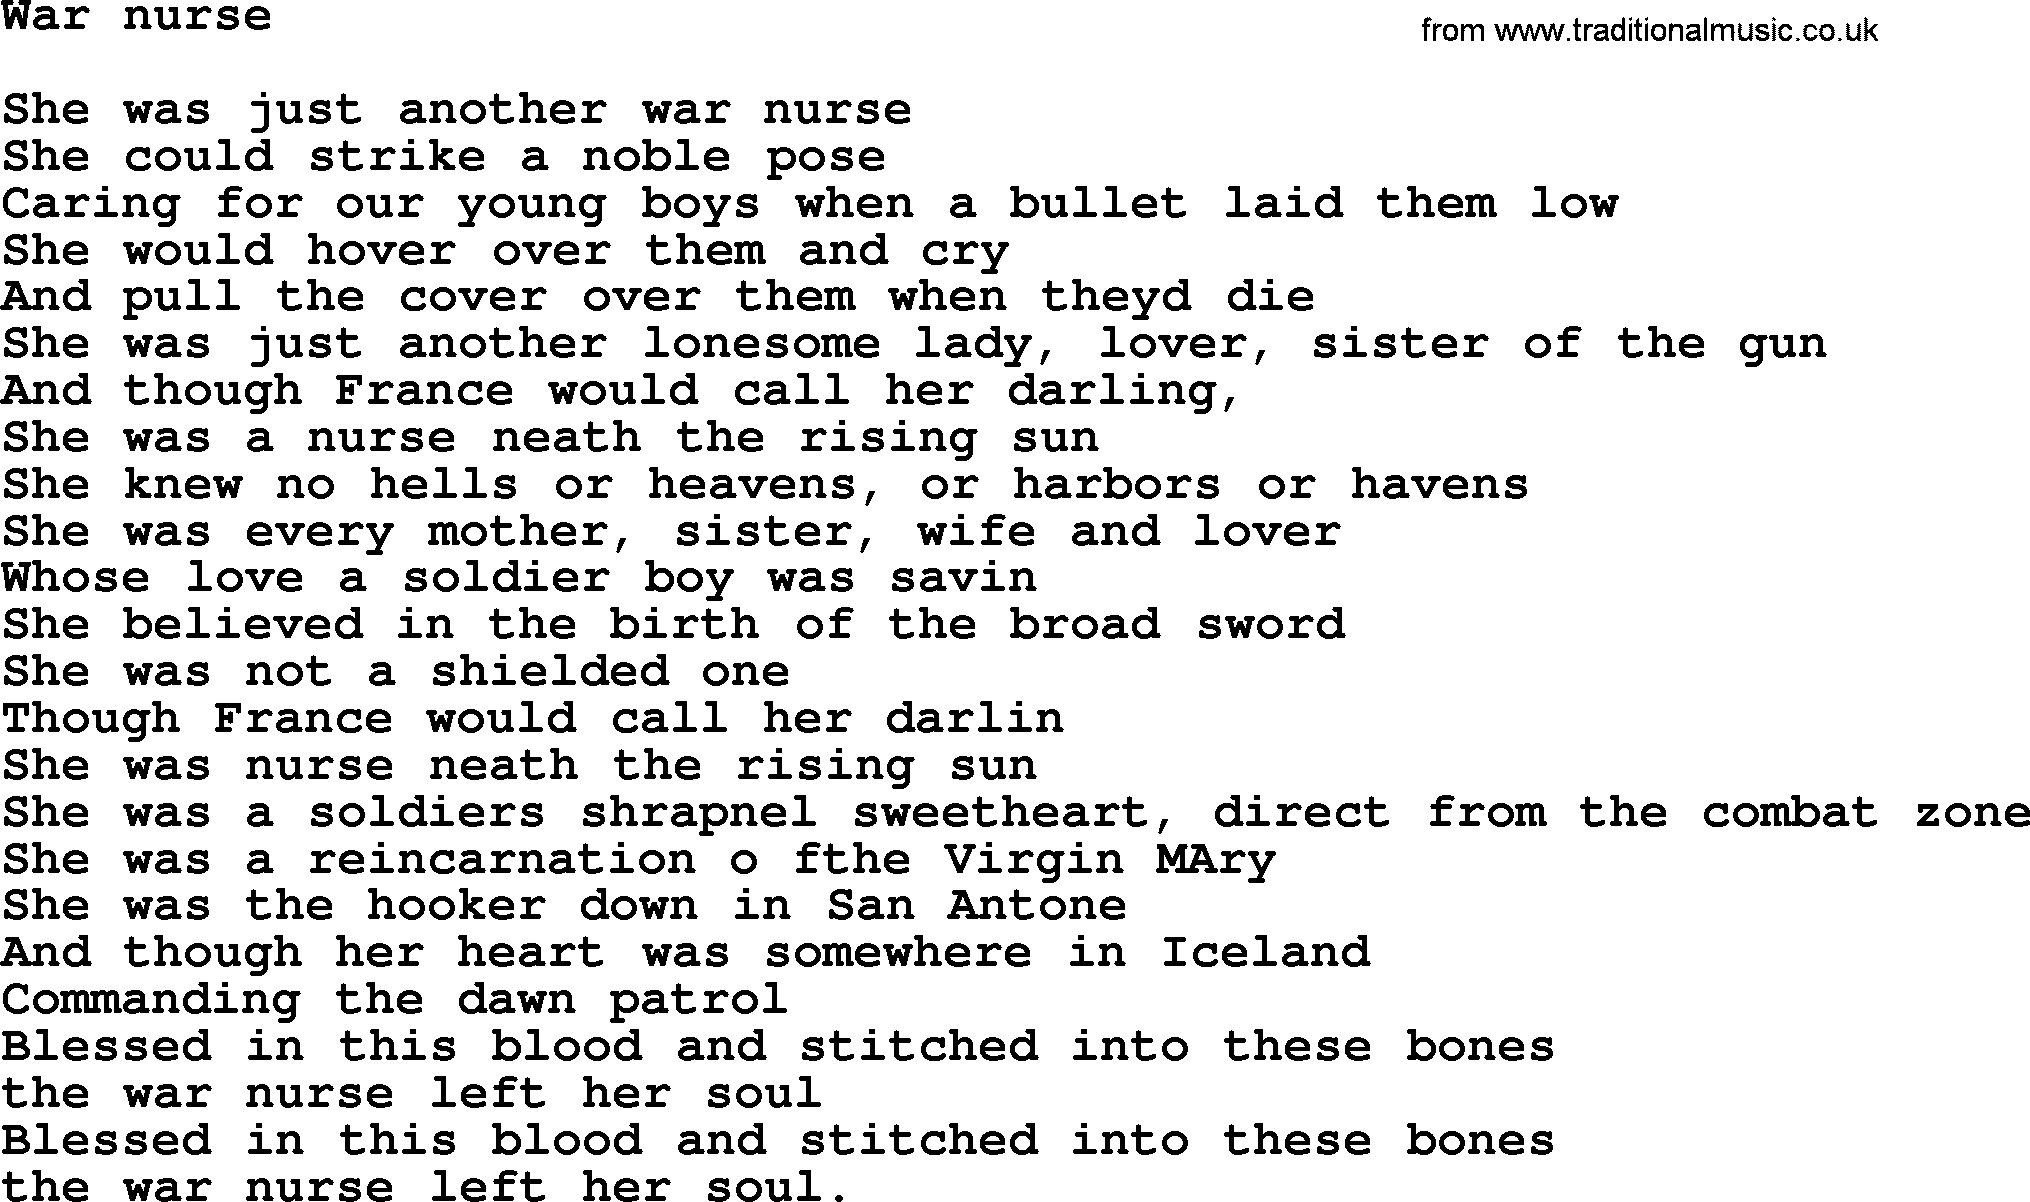 Bruce Springsteen song: War Nurse lyrics